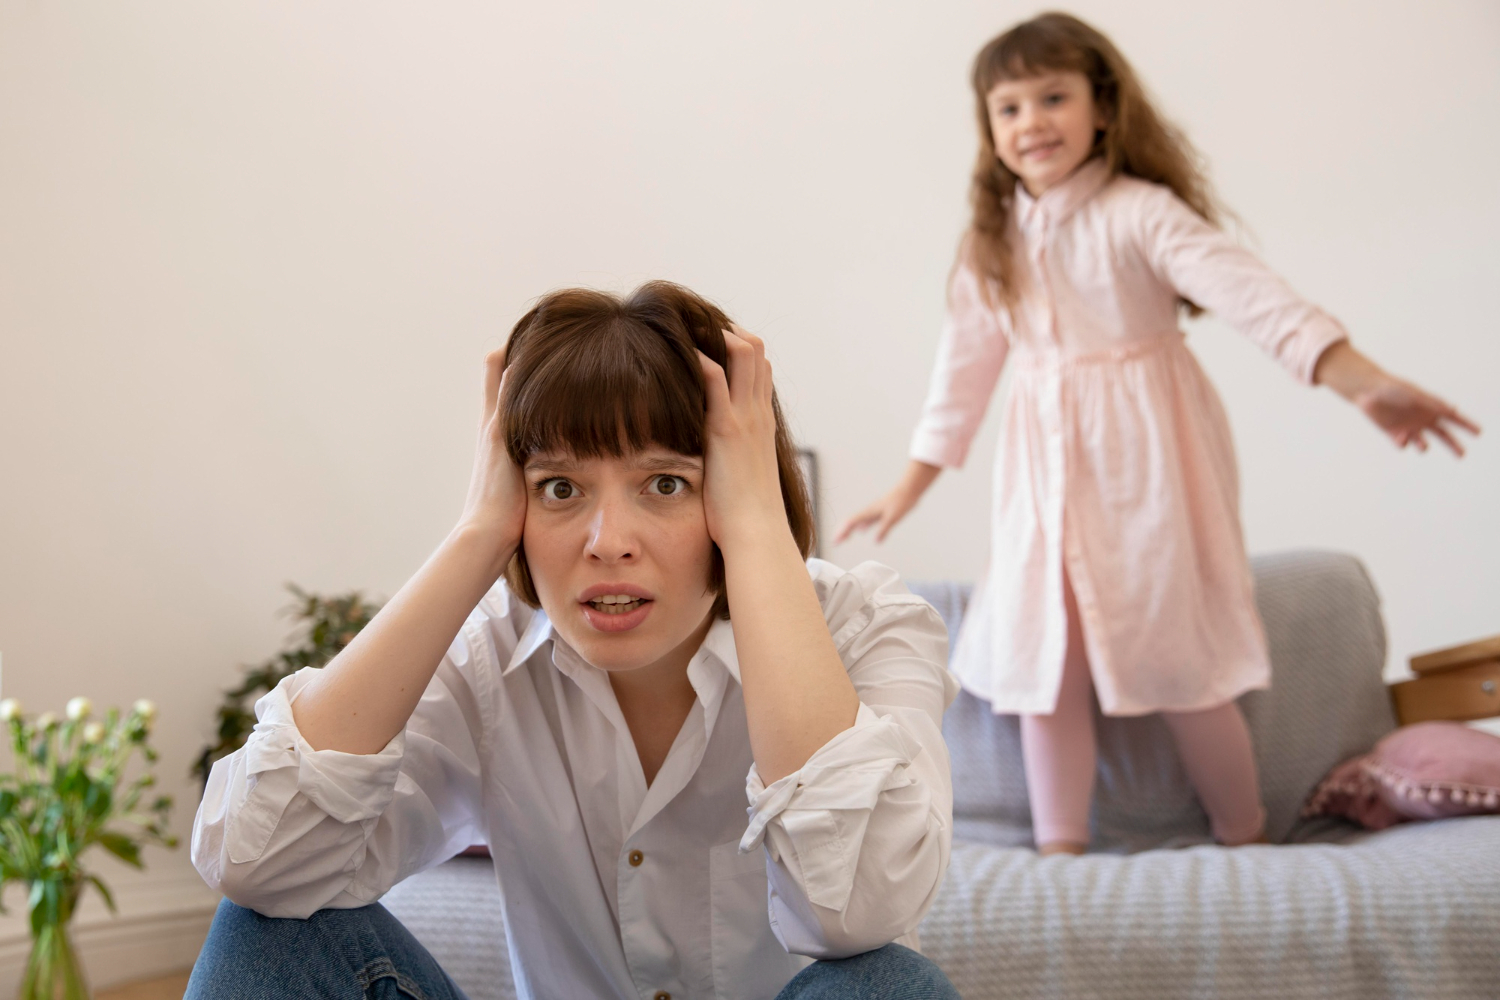 Психиатр Печенкина: непослушание может говорить о расстройстве поведения у детей